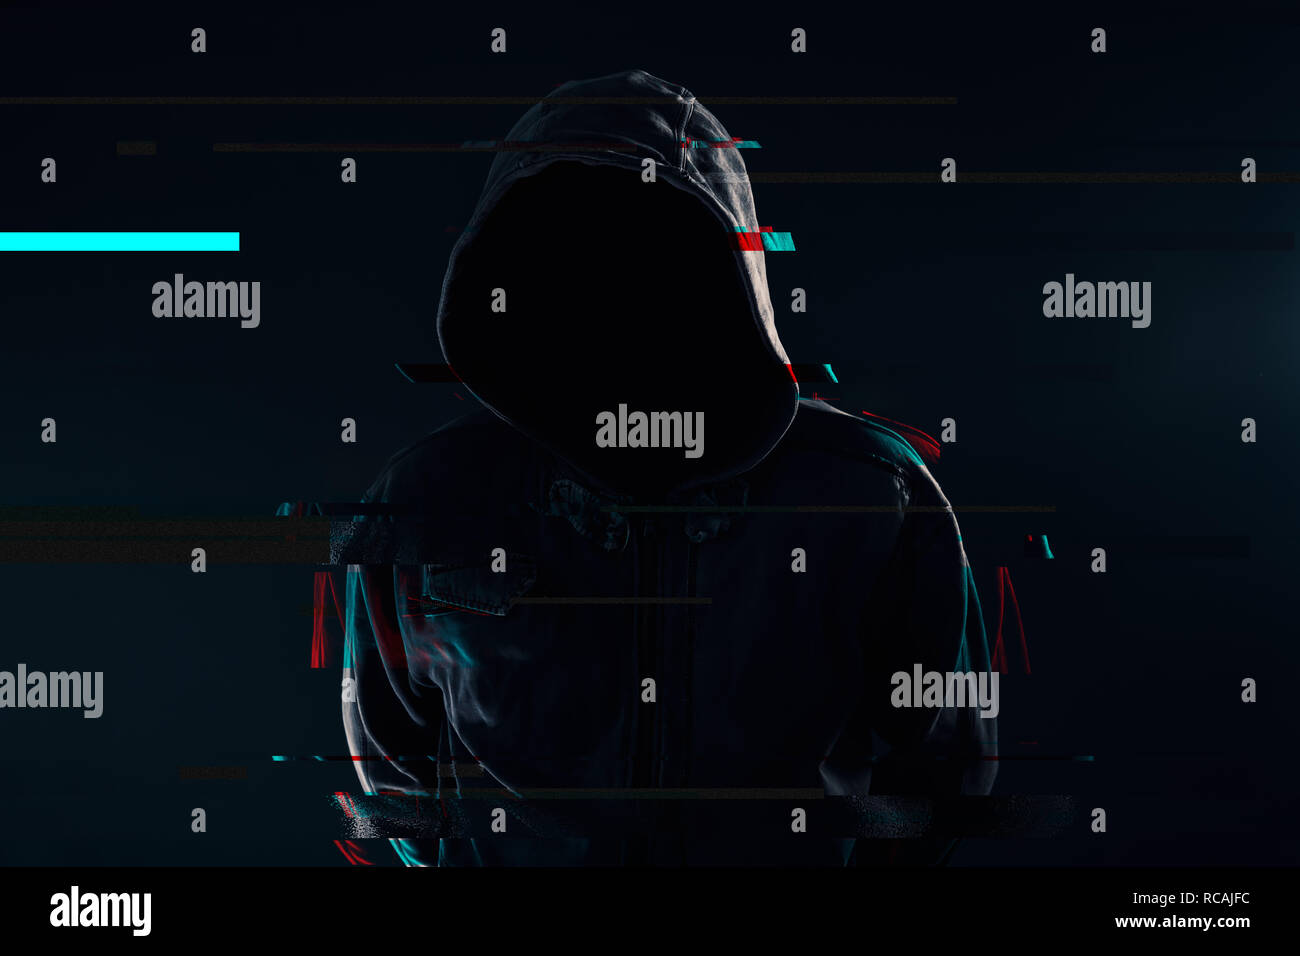 Pirate informatique à capuchon avec visage masqué, effet glitch Banque D'Images